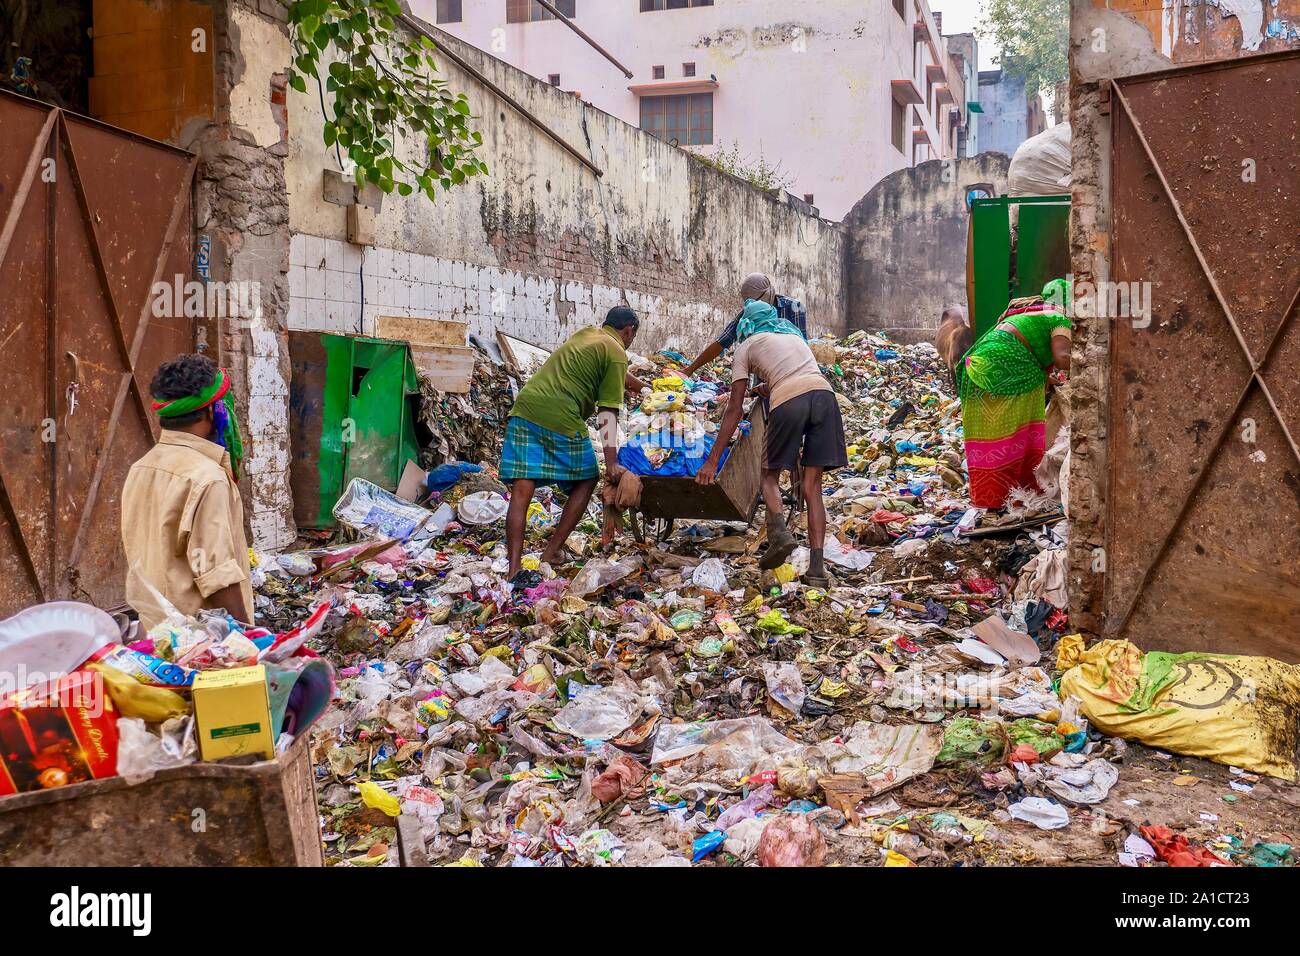 Garbage gedumpt sind und in einen freien Downtown City los in Varanasi, Indien, die wirft Fragen der Abfallwirtschaft und der öffentlichen Gesundheit gespeichert. Stockfoto